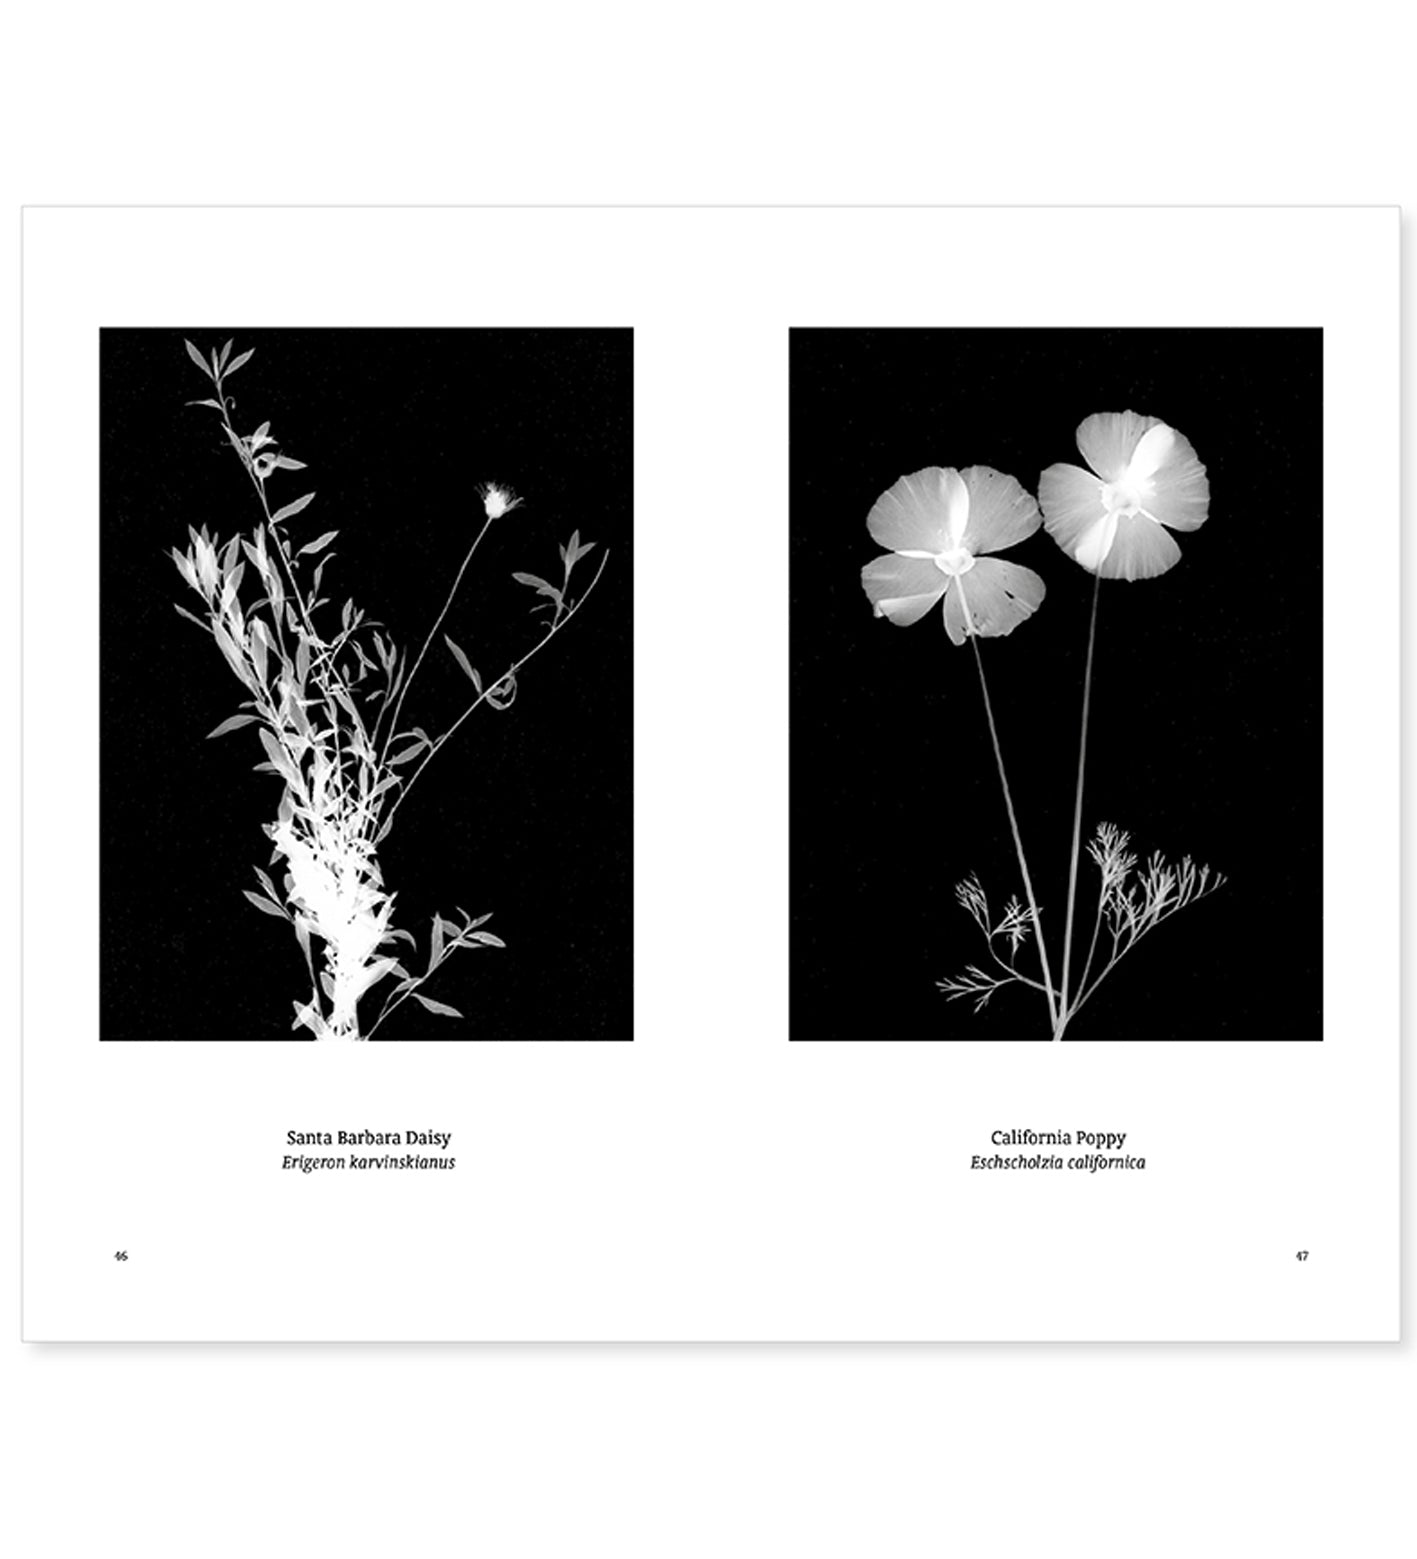 William Arnold: Suburban Herbarium